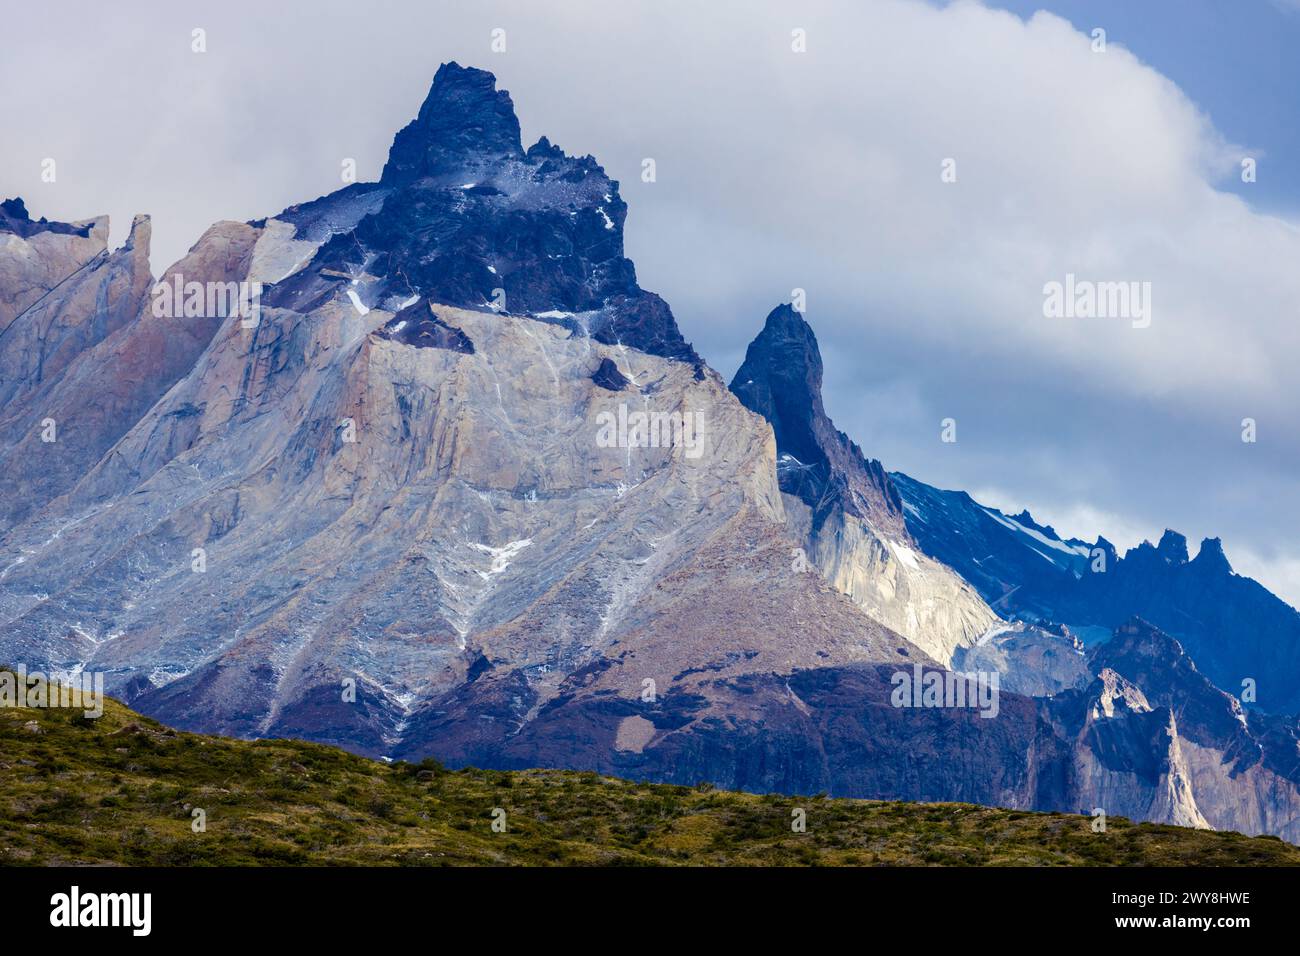 Montagnes Los Cuernos dans le belvédère Torres del Paine. Beau point de vue sur les sommets de montagne en Patagonie chilienne, Chili. Paysage pittoresque de Patagonie Banque D'Images